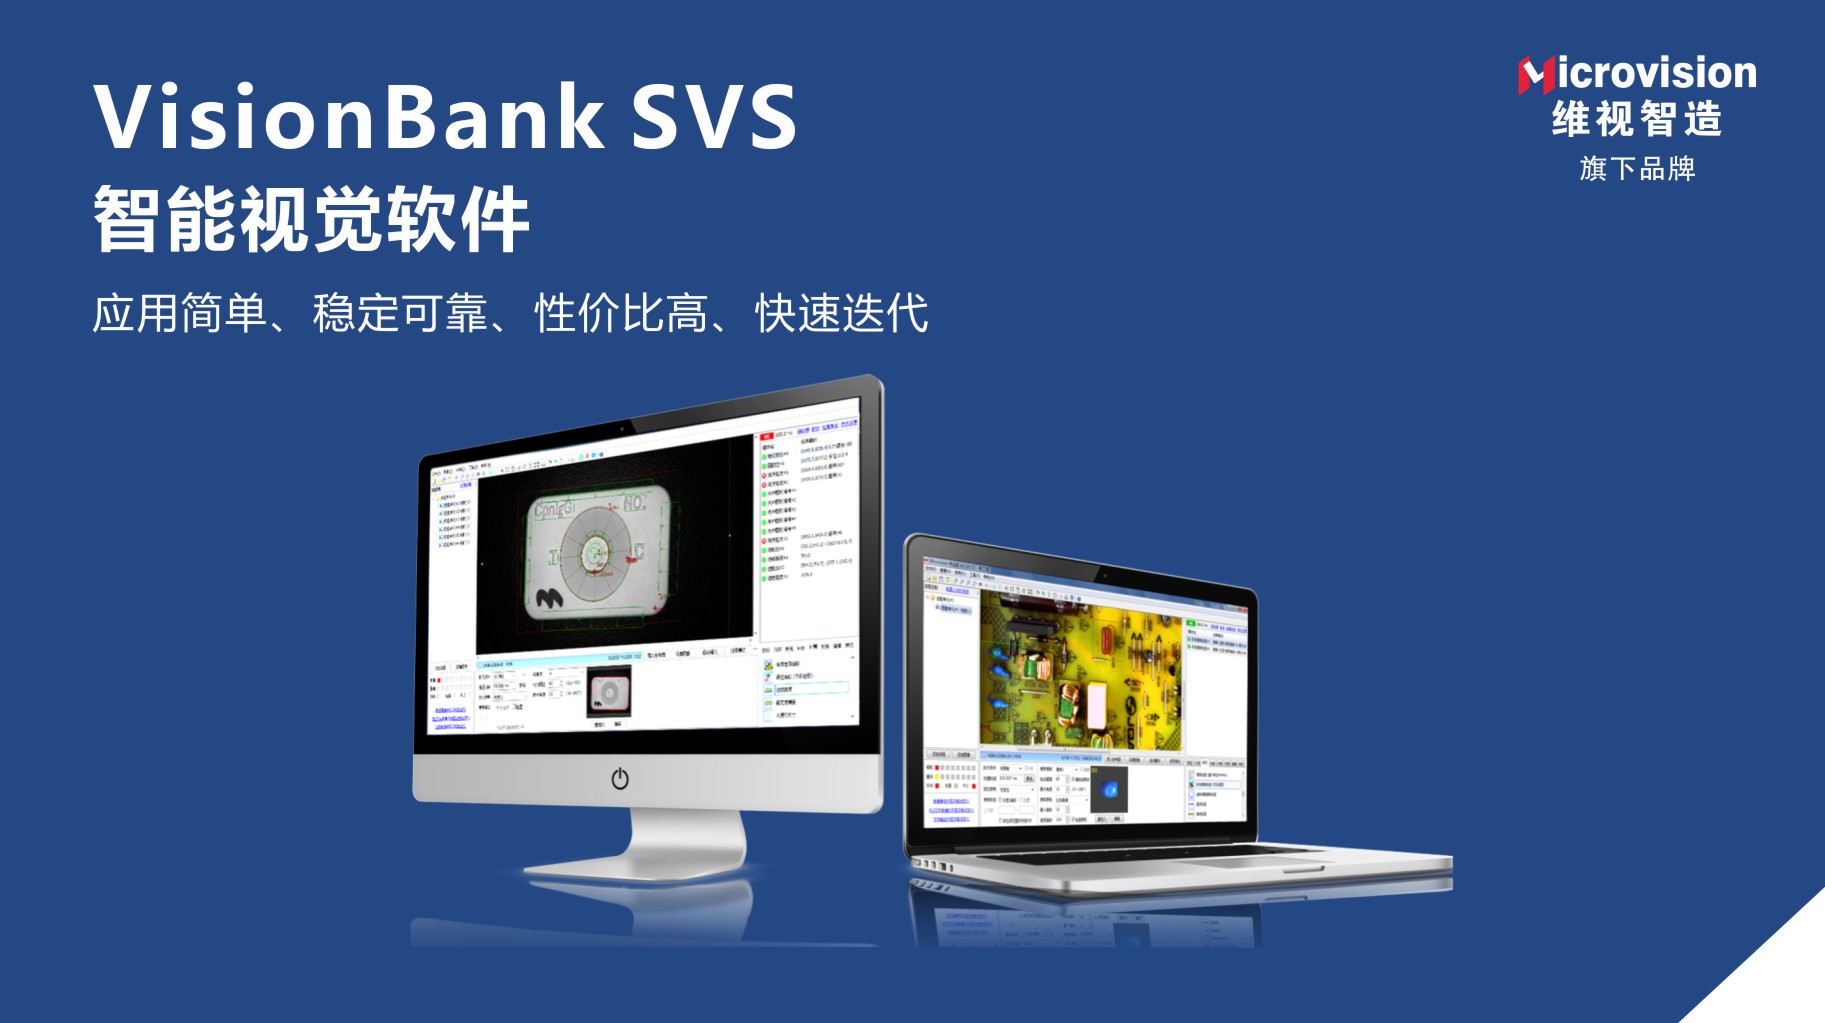 VisionBank 机器视觉软件常见问题,软件使用问题,无法采集图像